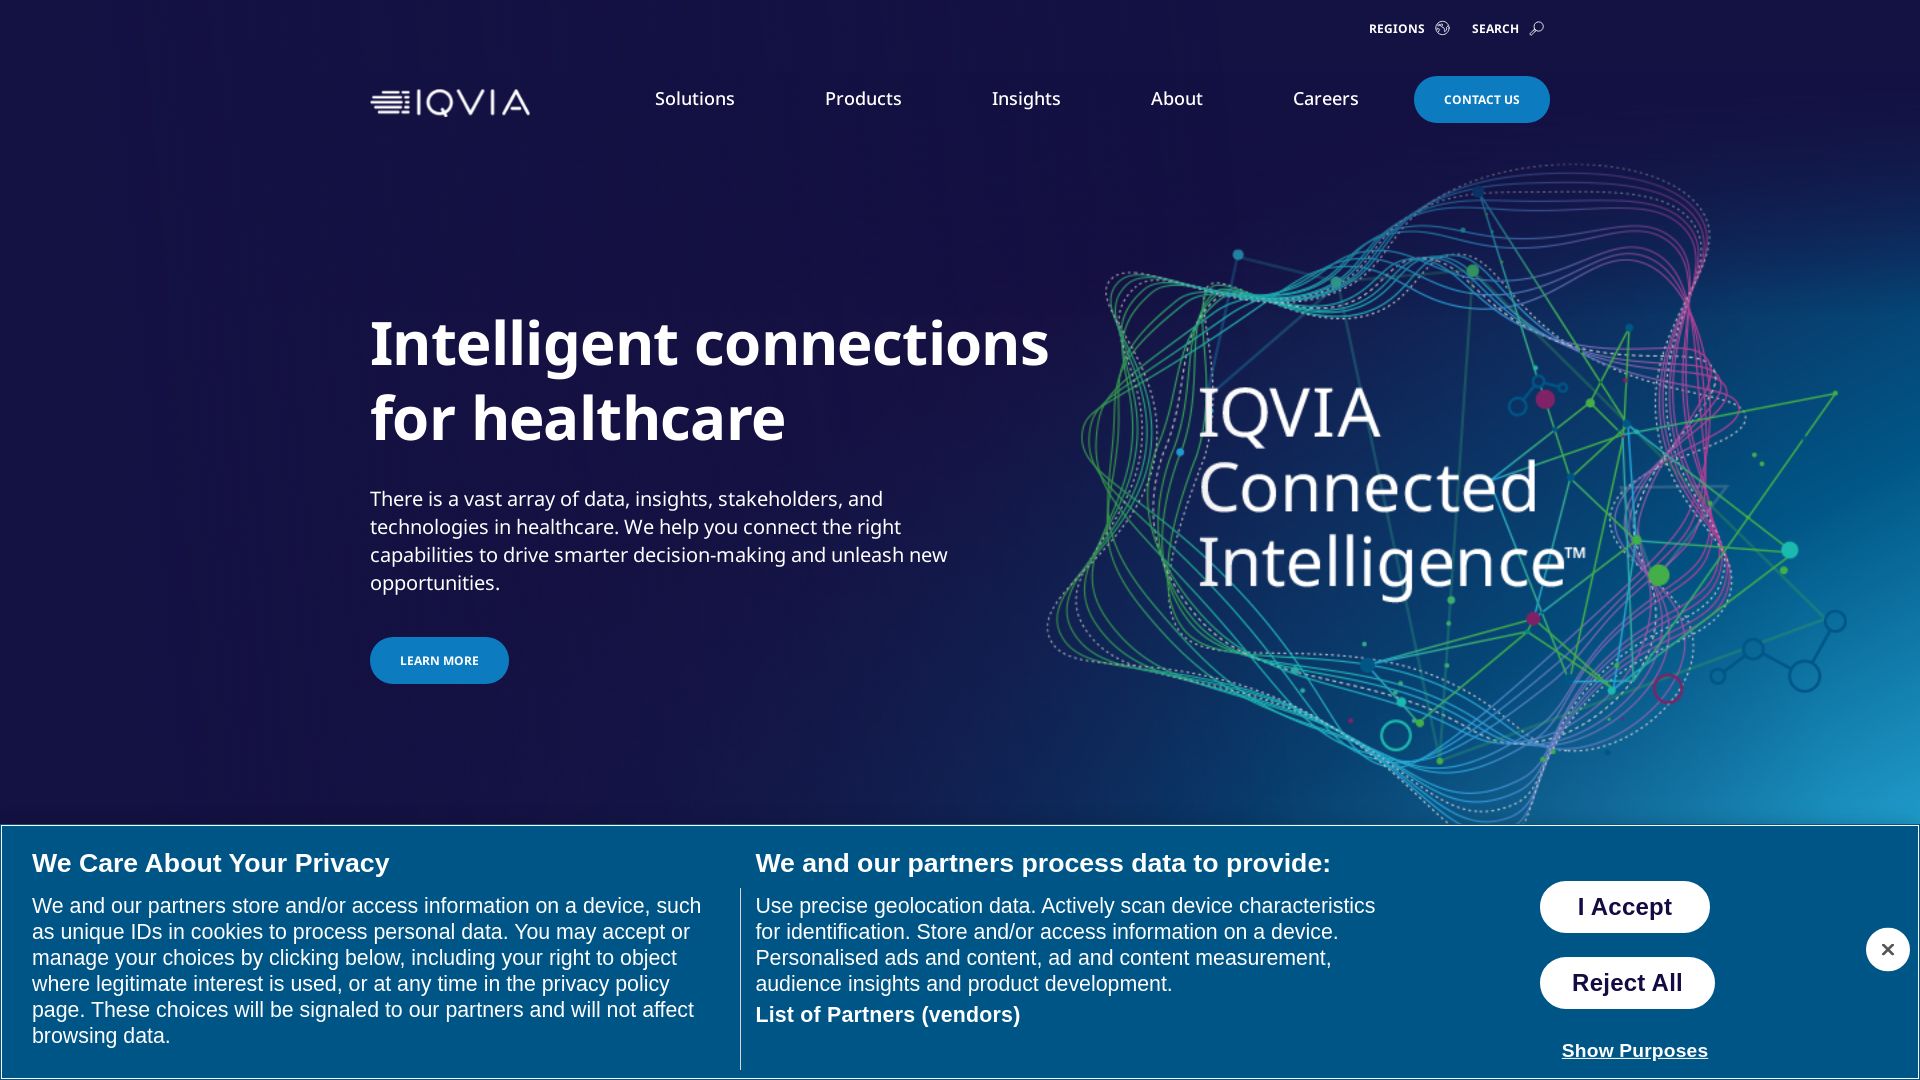 Status do site iqvia.com está   ONLINE